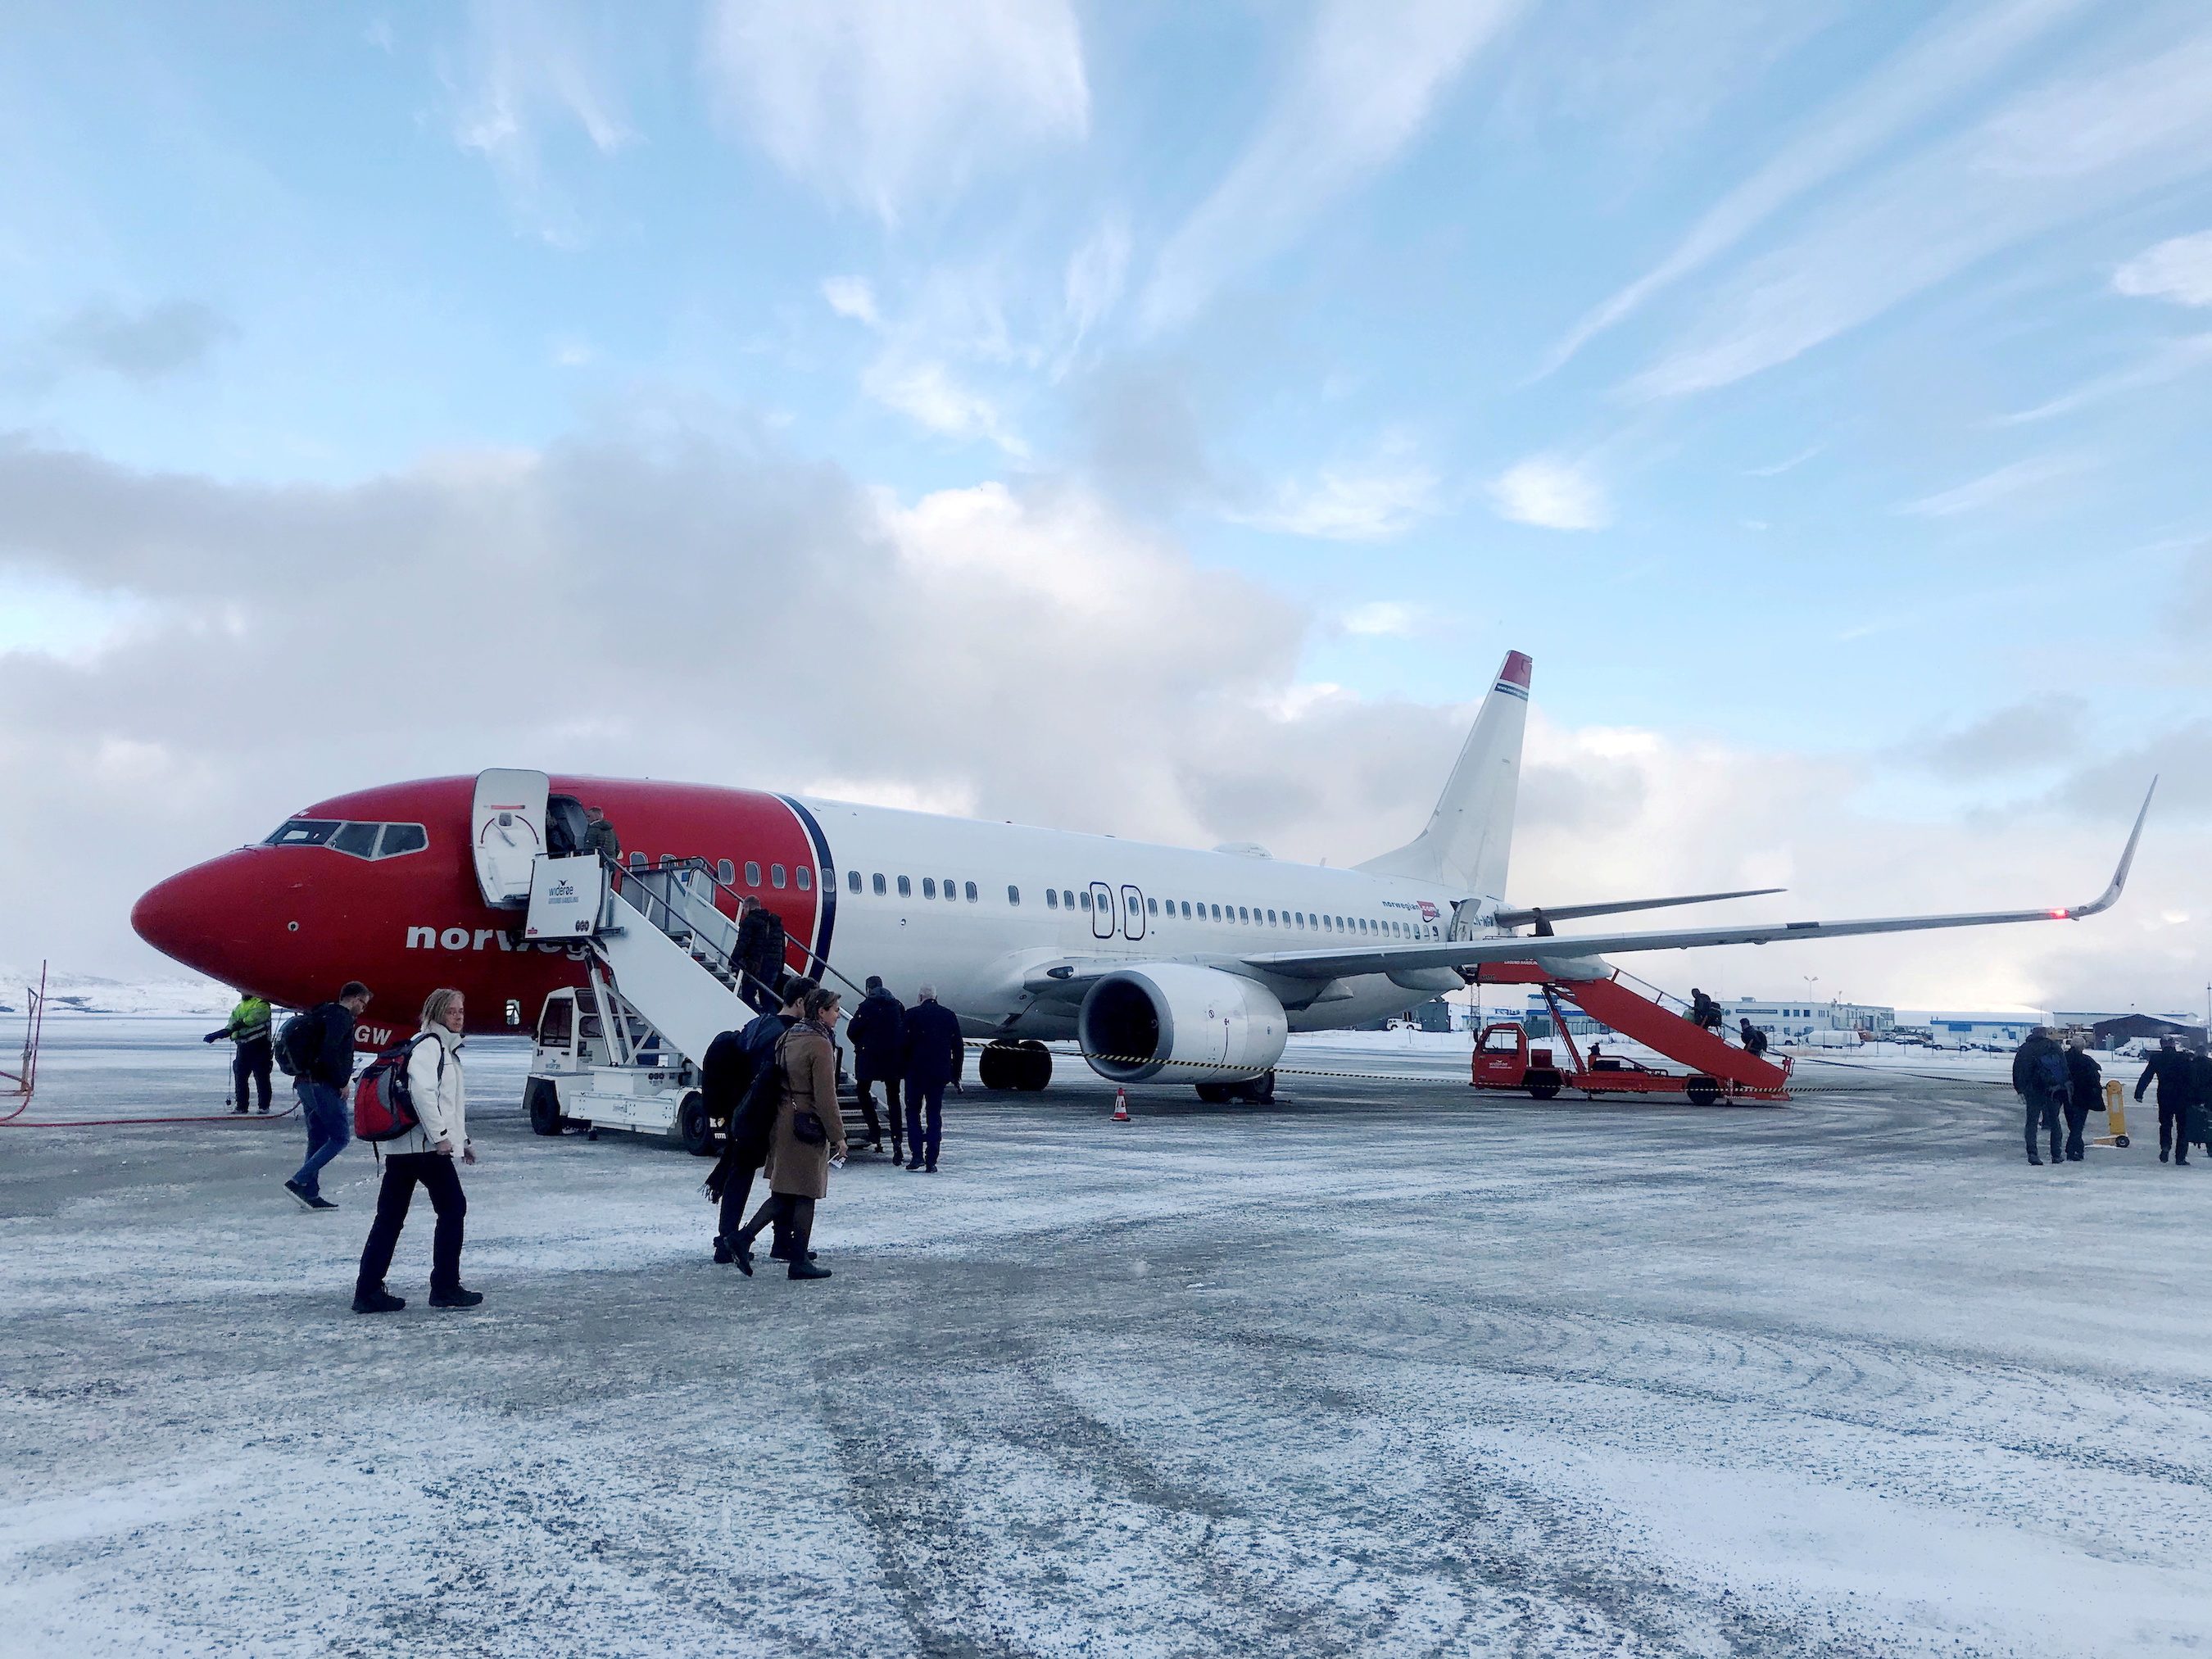 Norwegian Air’s Q3 2021 revenue rises as travel picks up